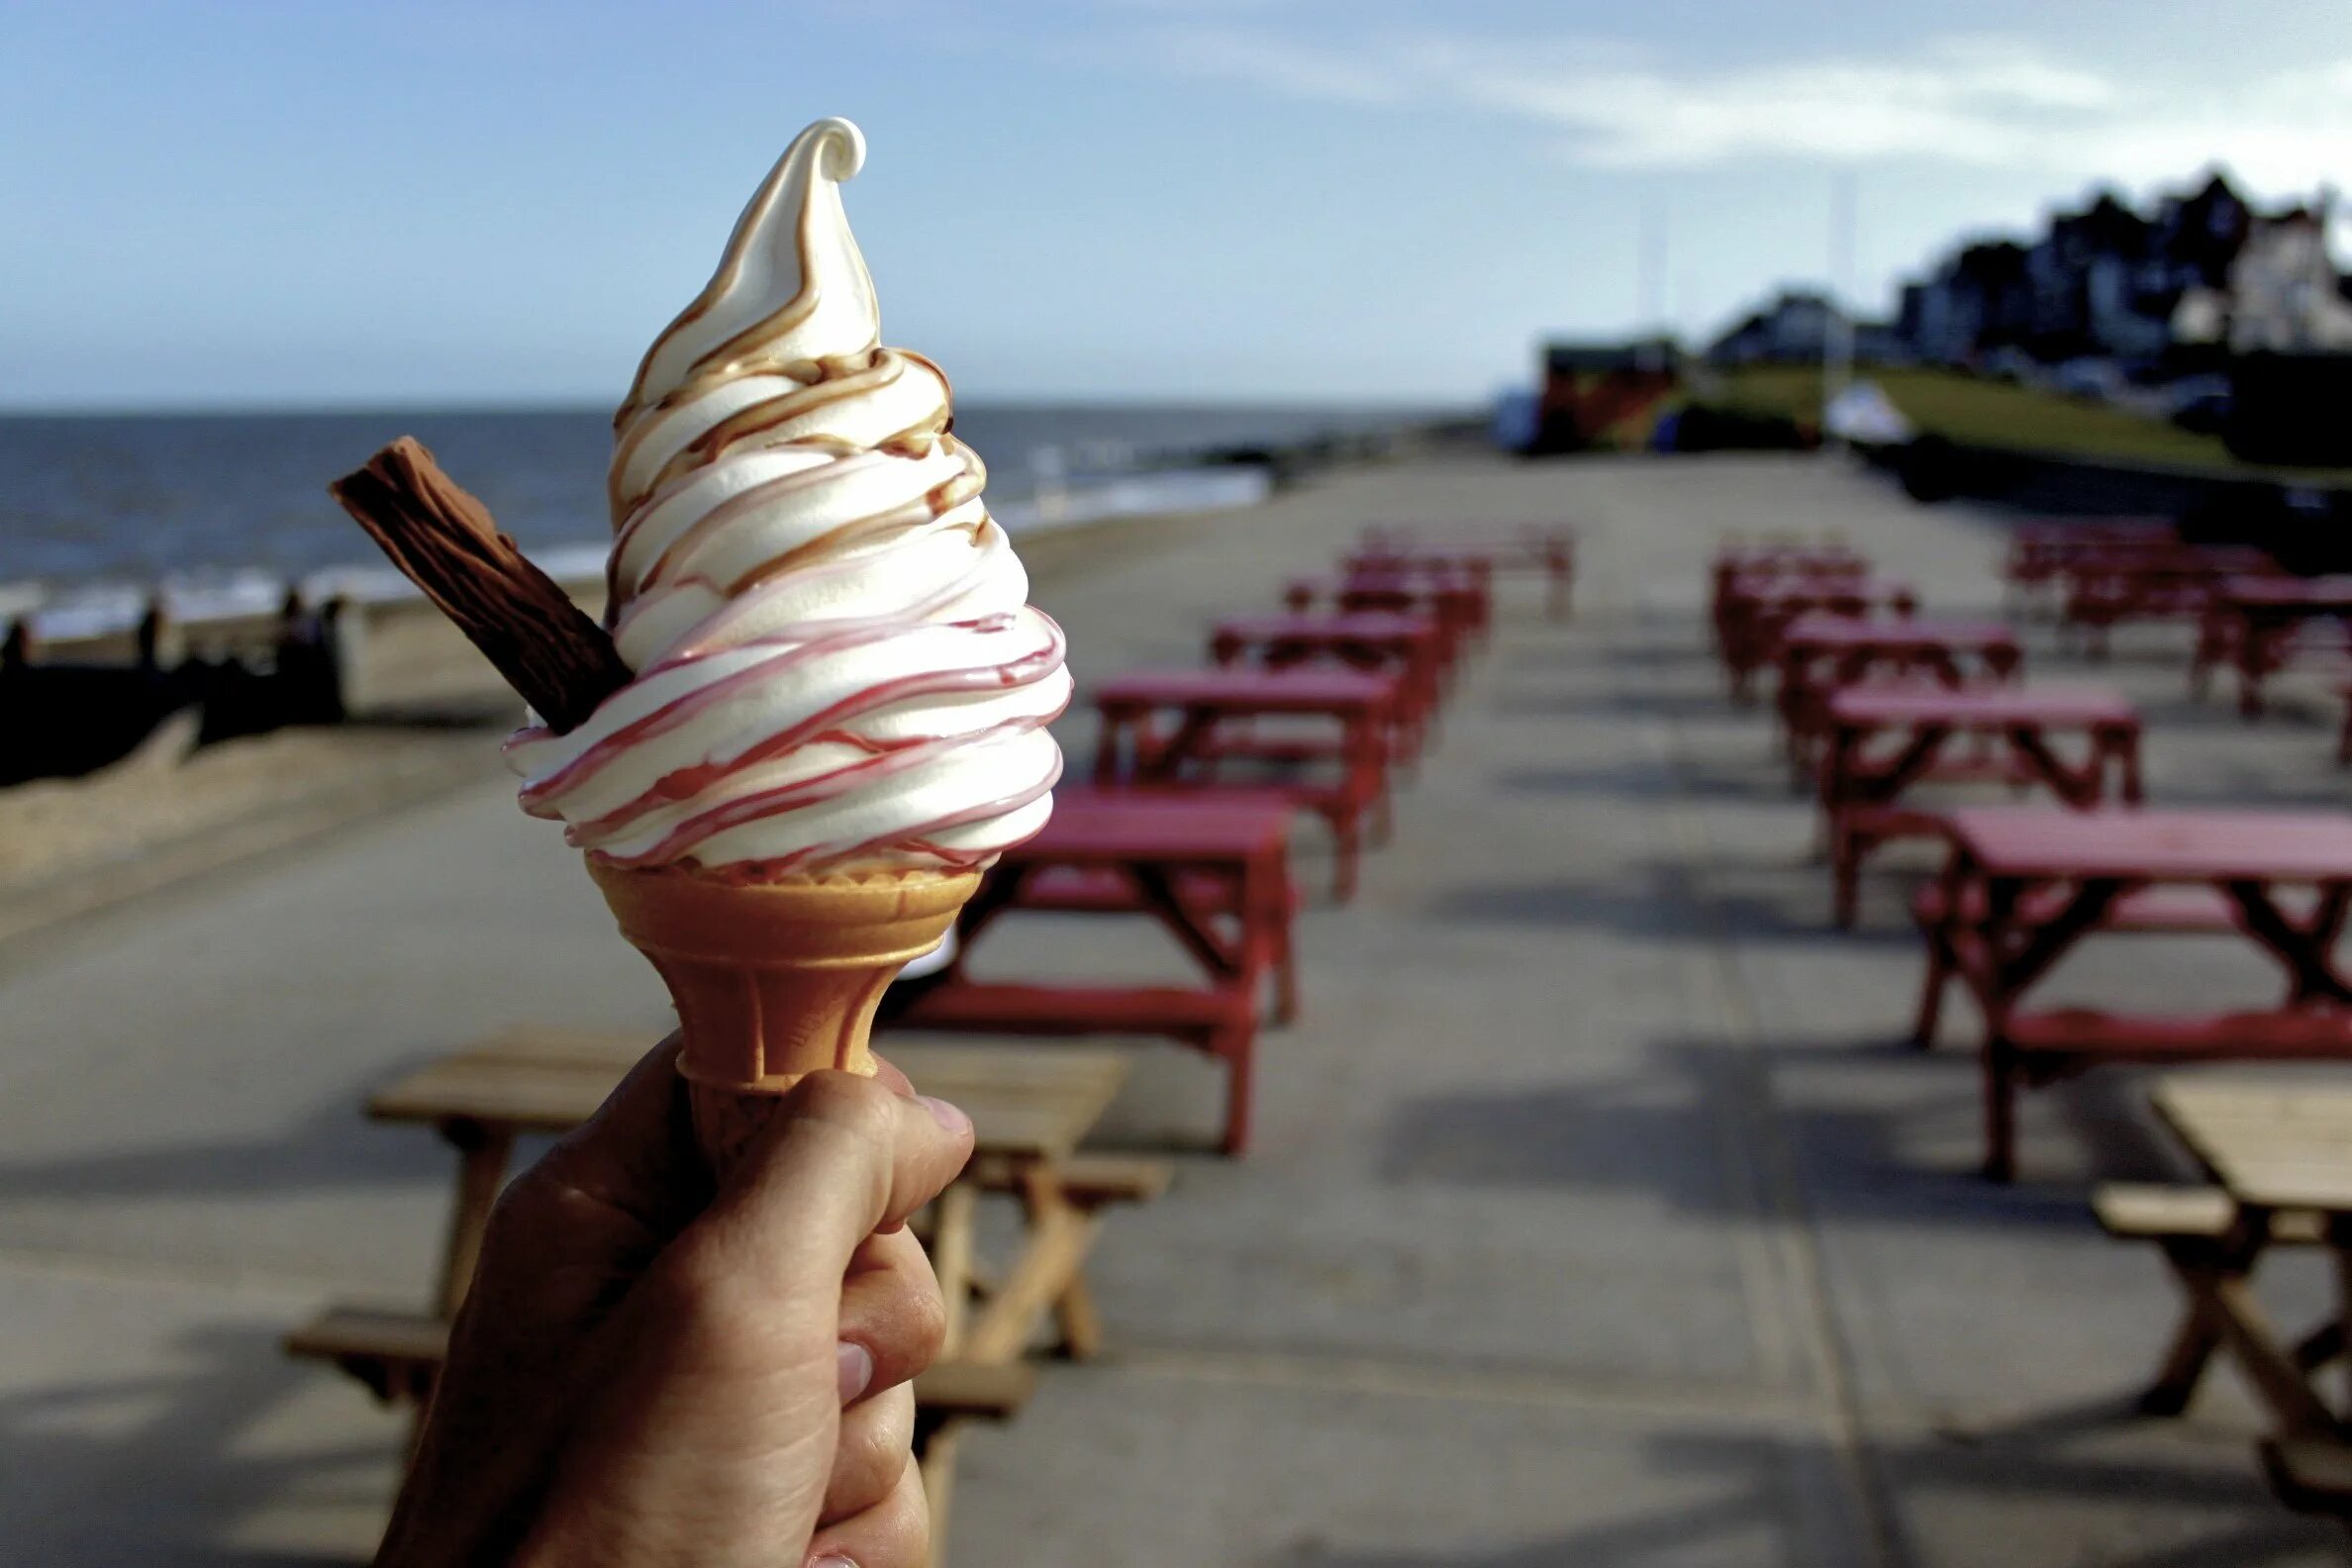 Айс Крим мороженщик. Красивое мороженое. Мягкое мороженое. Мороженое красиво. Мороженый места места